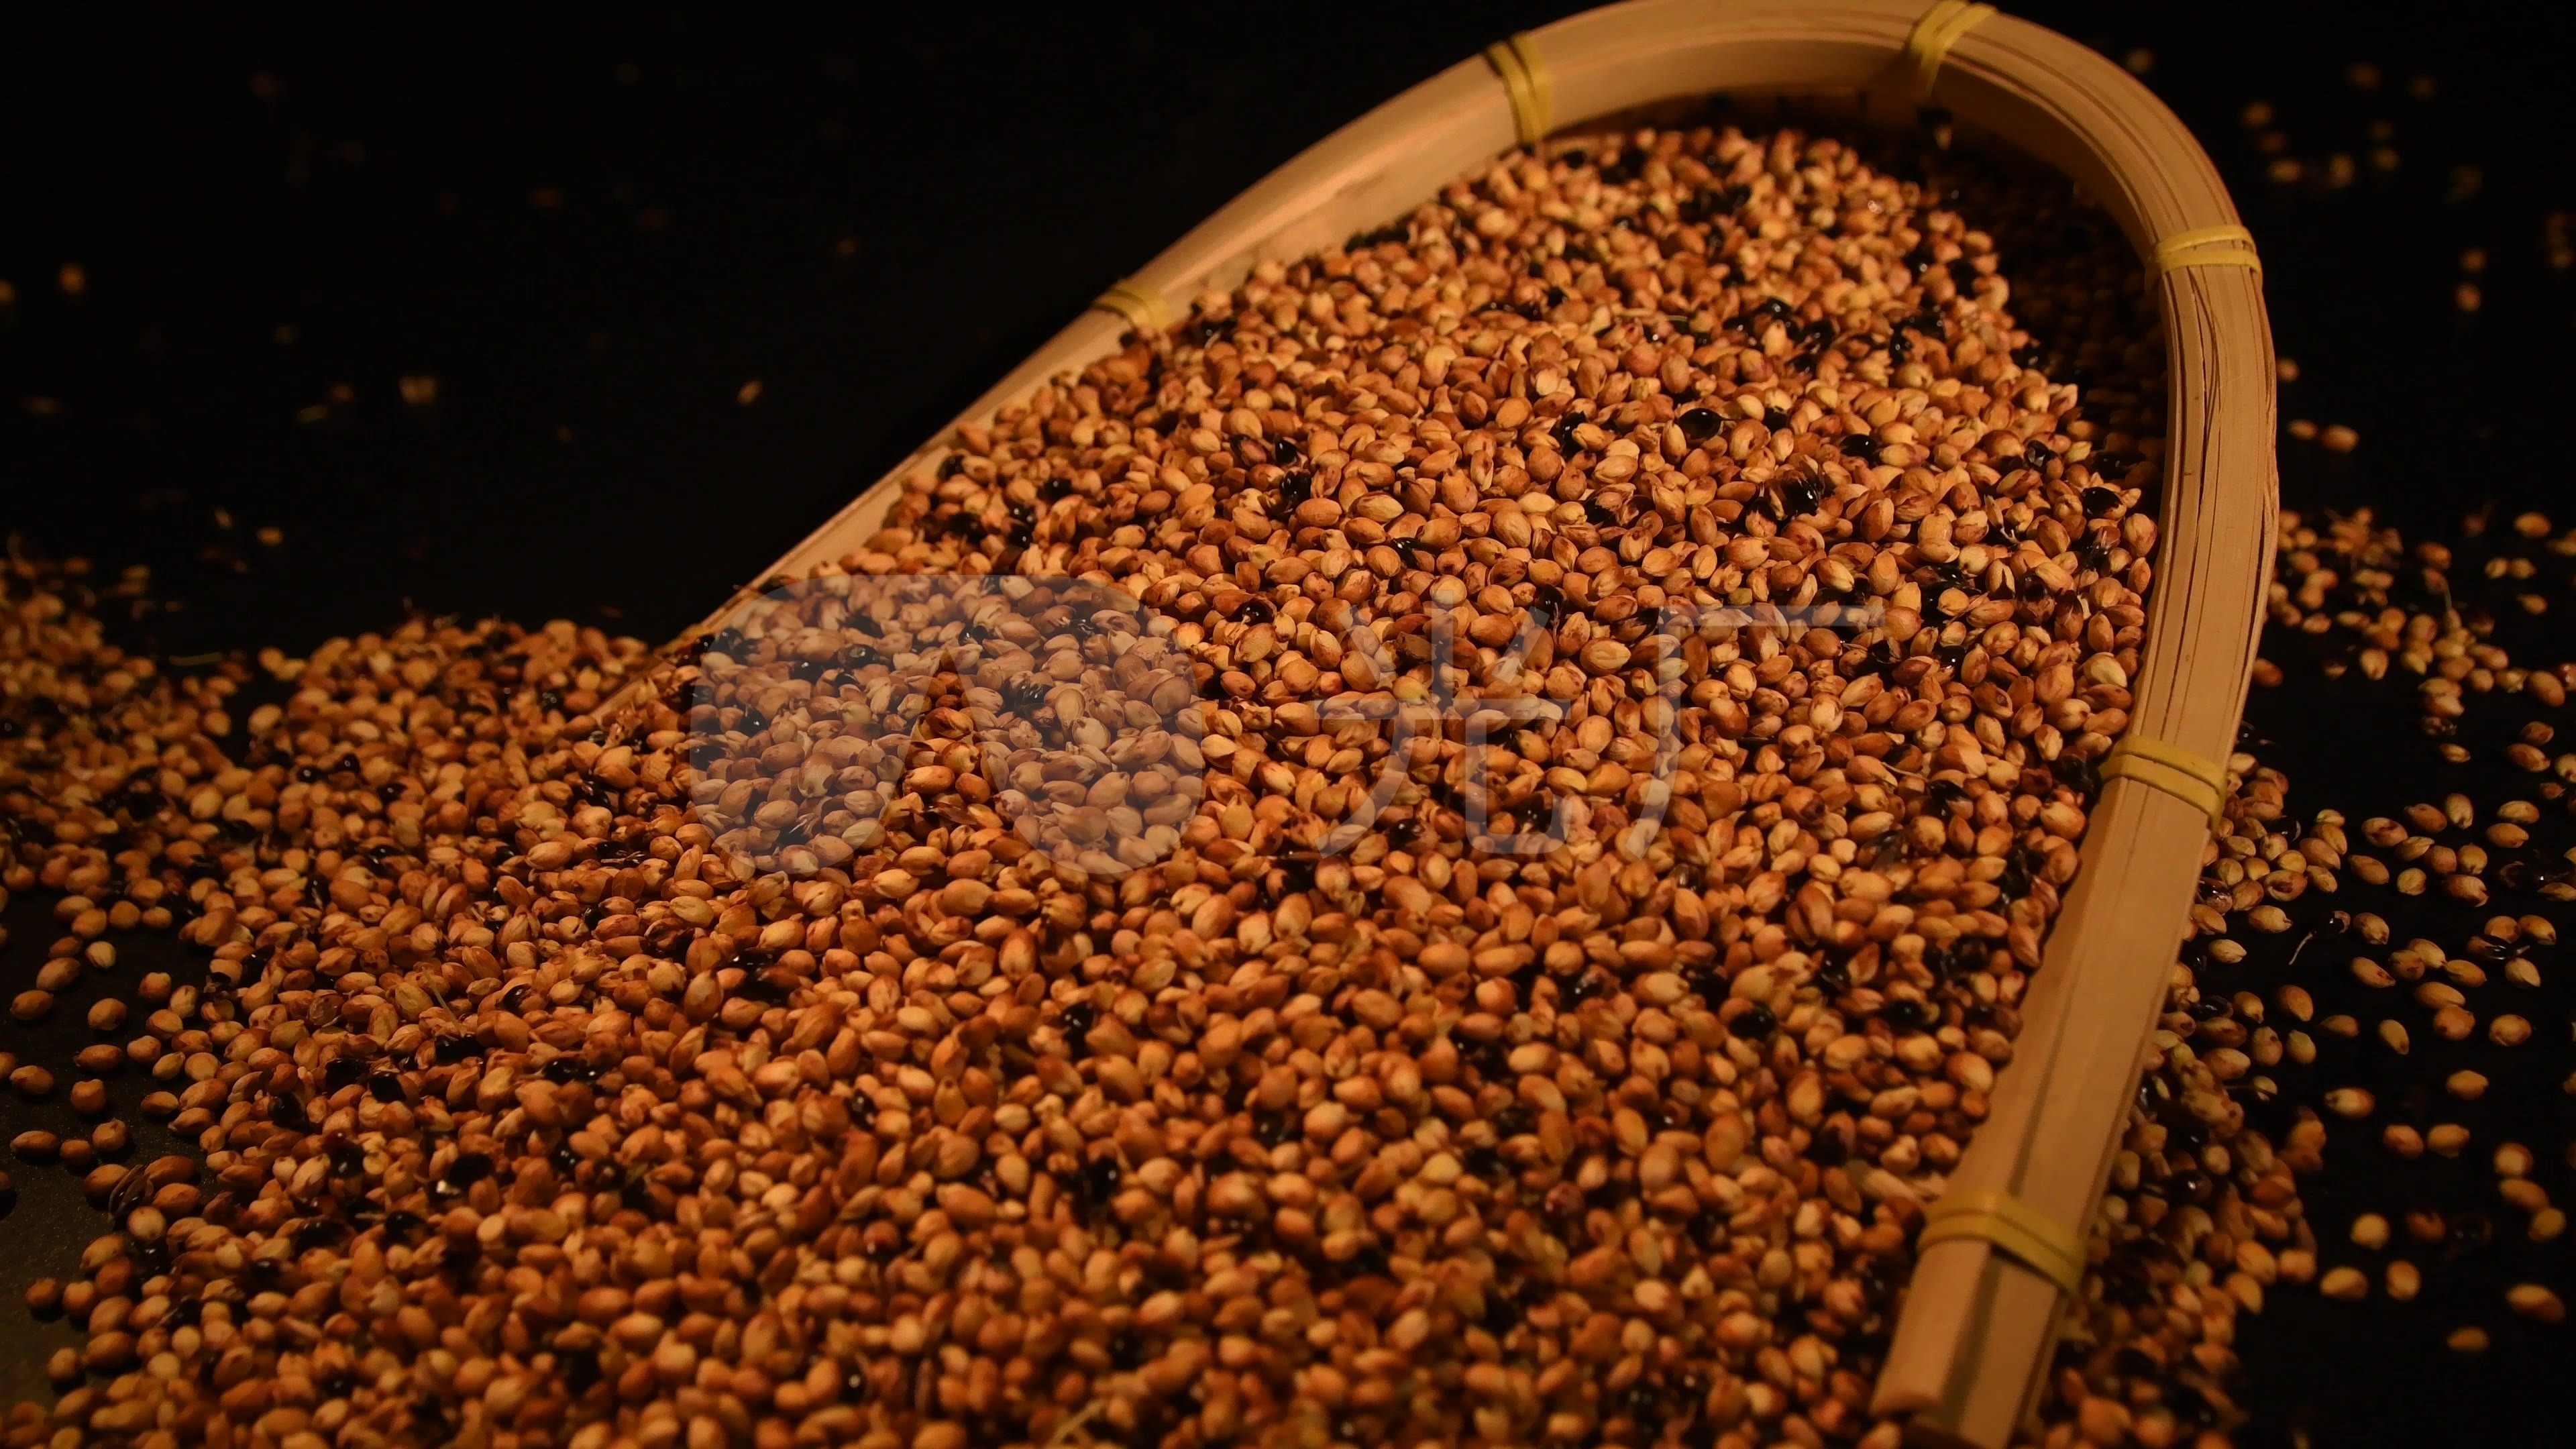 精选优质红米500g 纯天然红米还有农家自产小米黑豆黑米红豆_mengzhifei